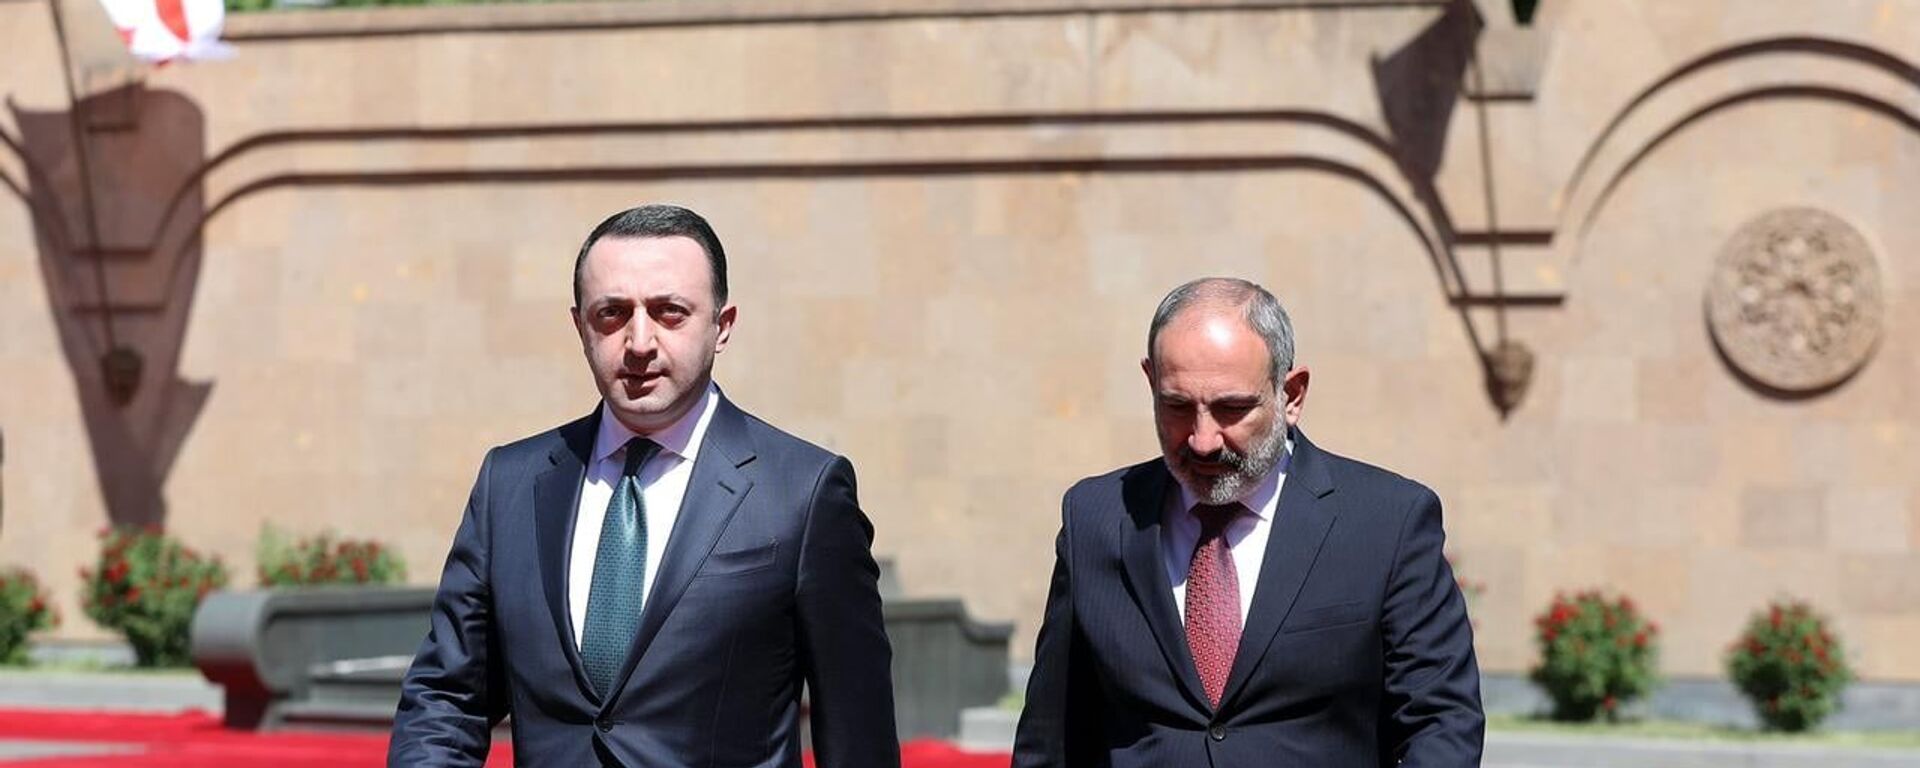 Премьер-министр Грузии Ираклий Гарибашвили прибыл в Армению с официальным визитом - Sputnik Грузия, 1920, 28.06.2021